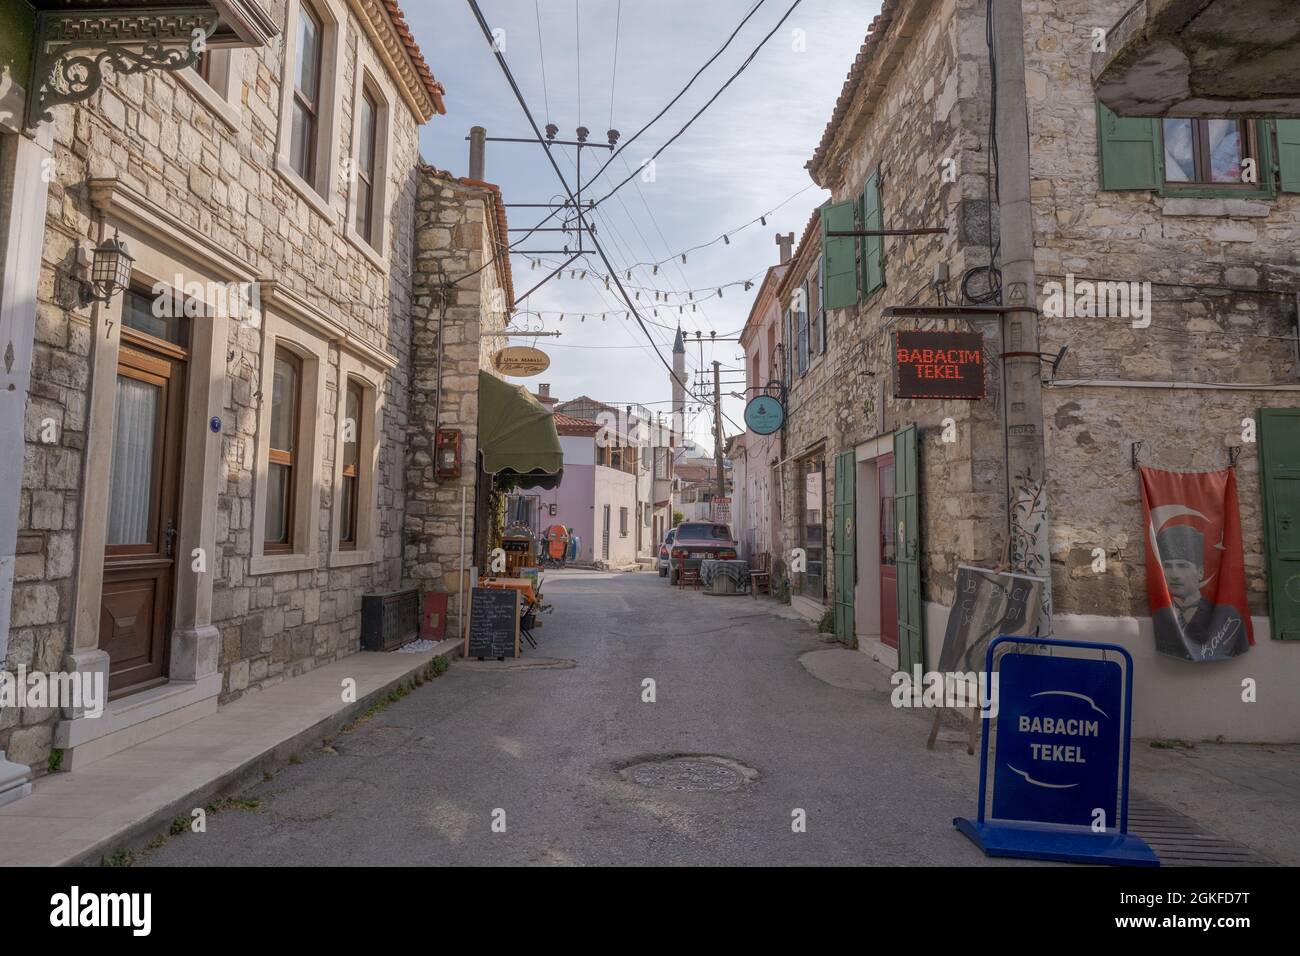 Urla, Izmir, Türkei - 03.08.2021: Historische touristische Straßen- und Steingebäude und Geschäfte an einem bewölkten Tag Stockfoto